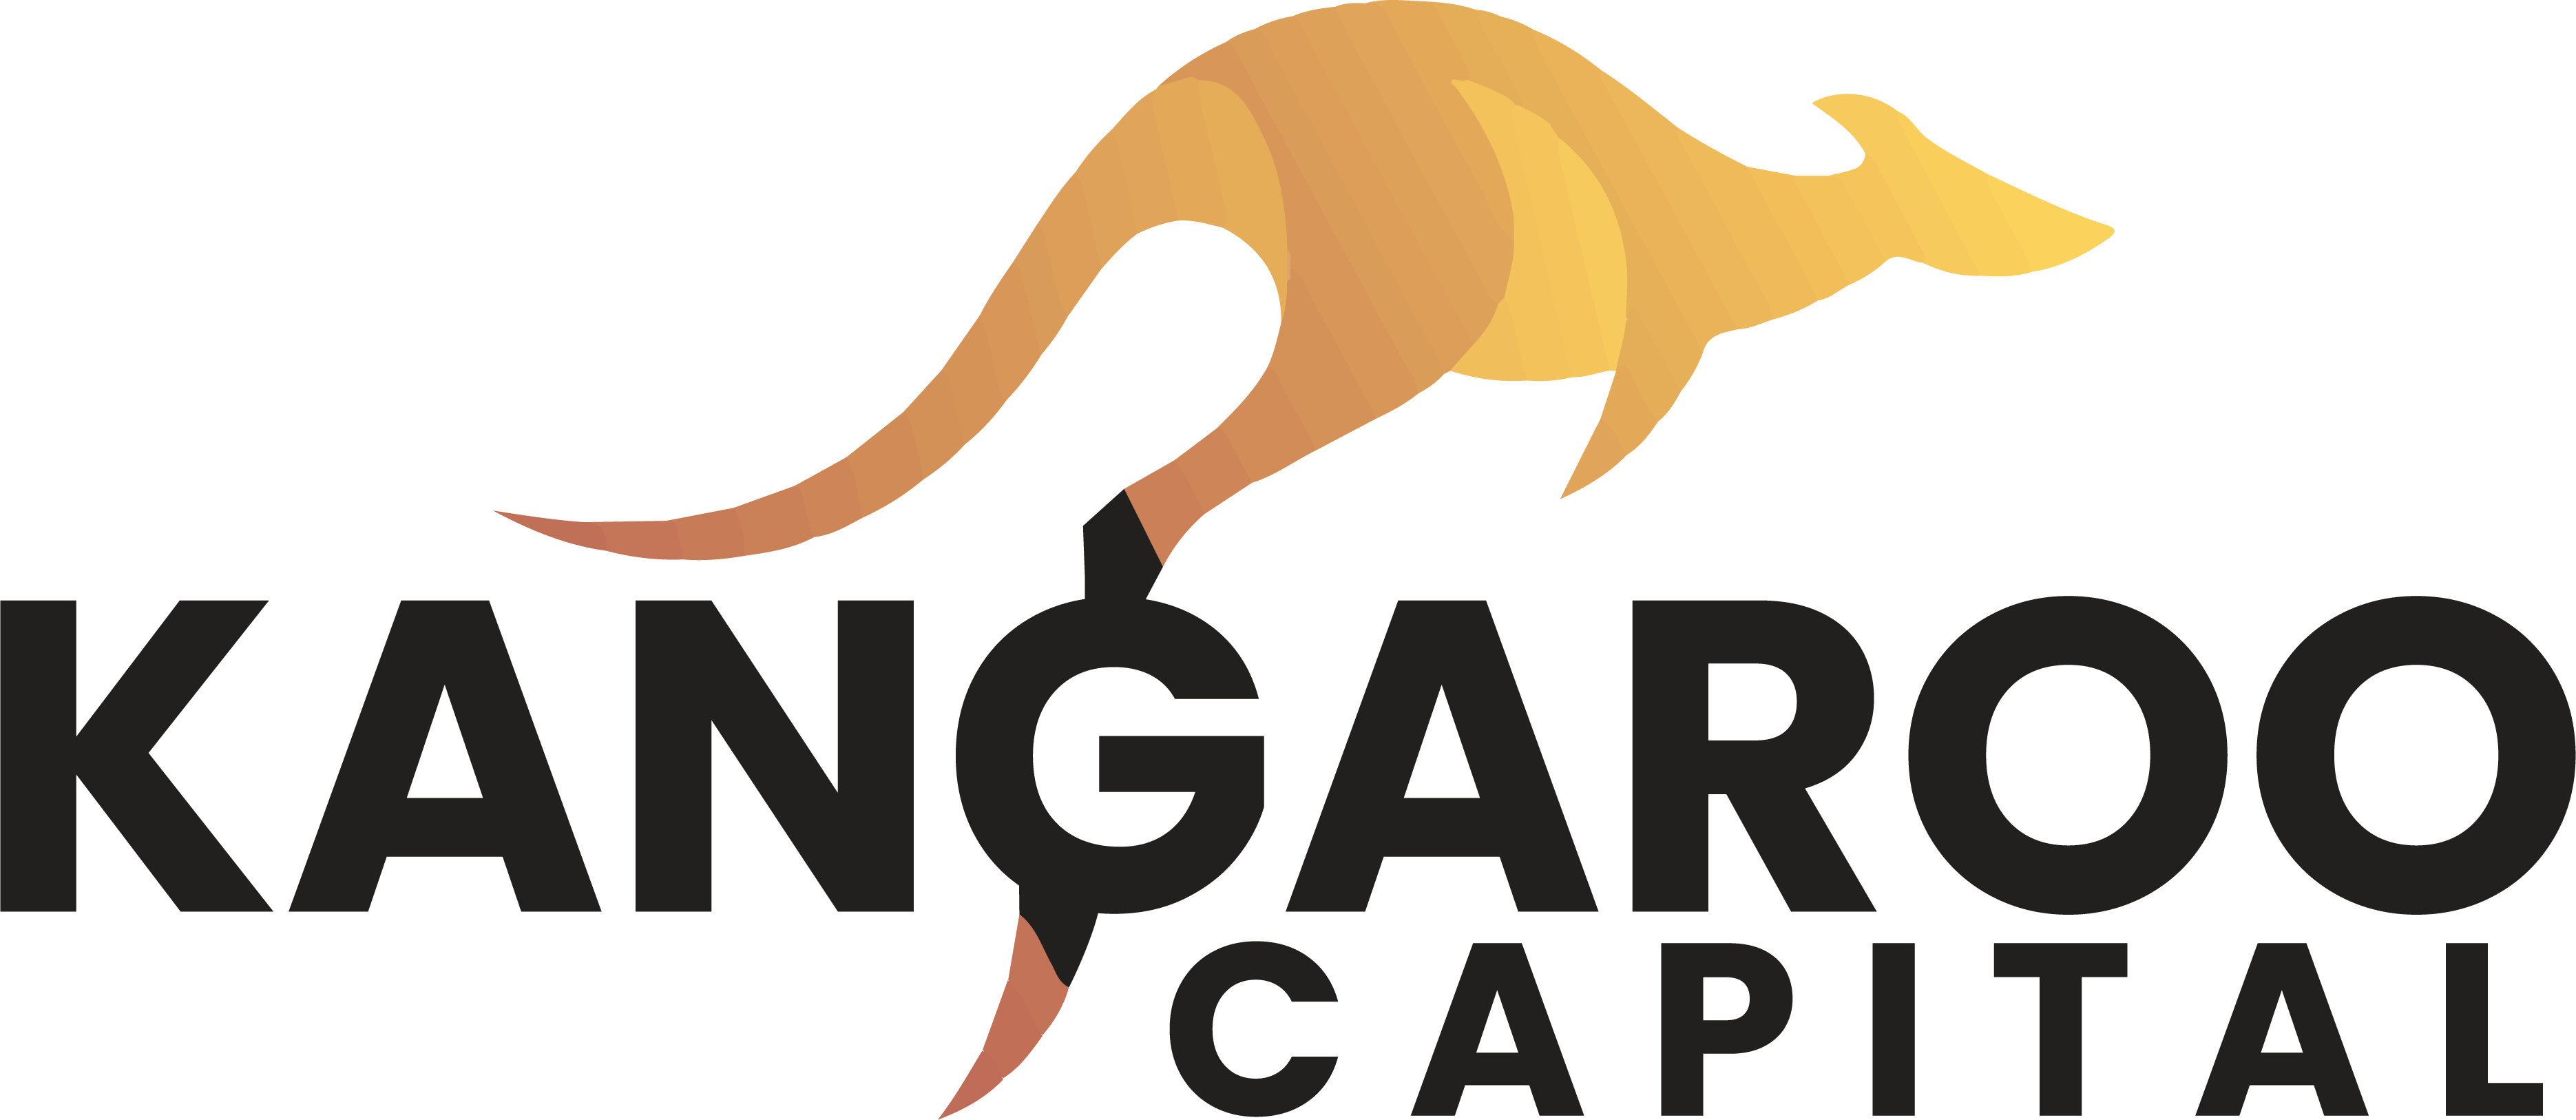 Kangaroo Capital